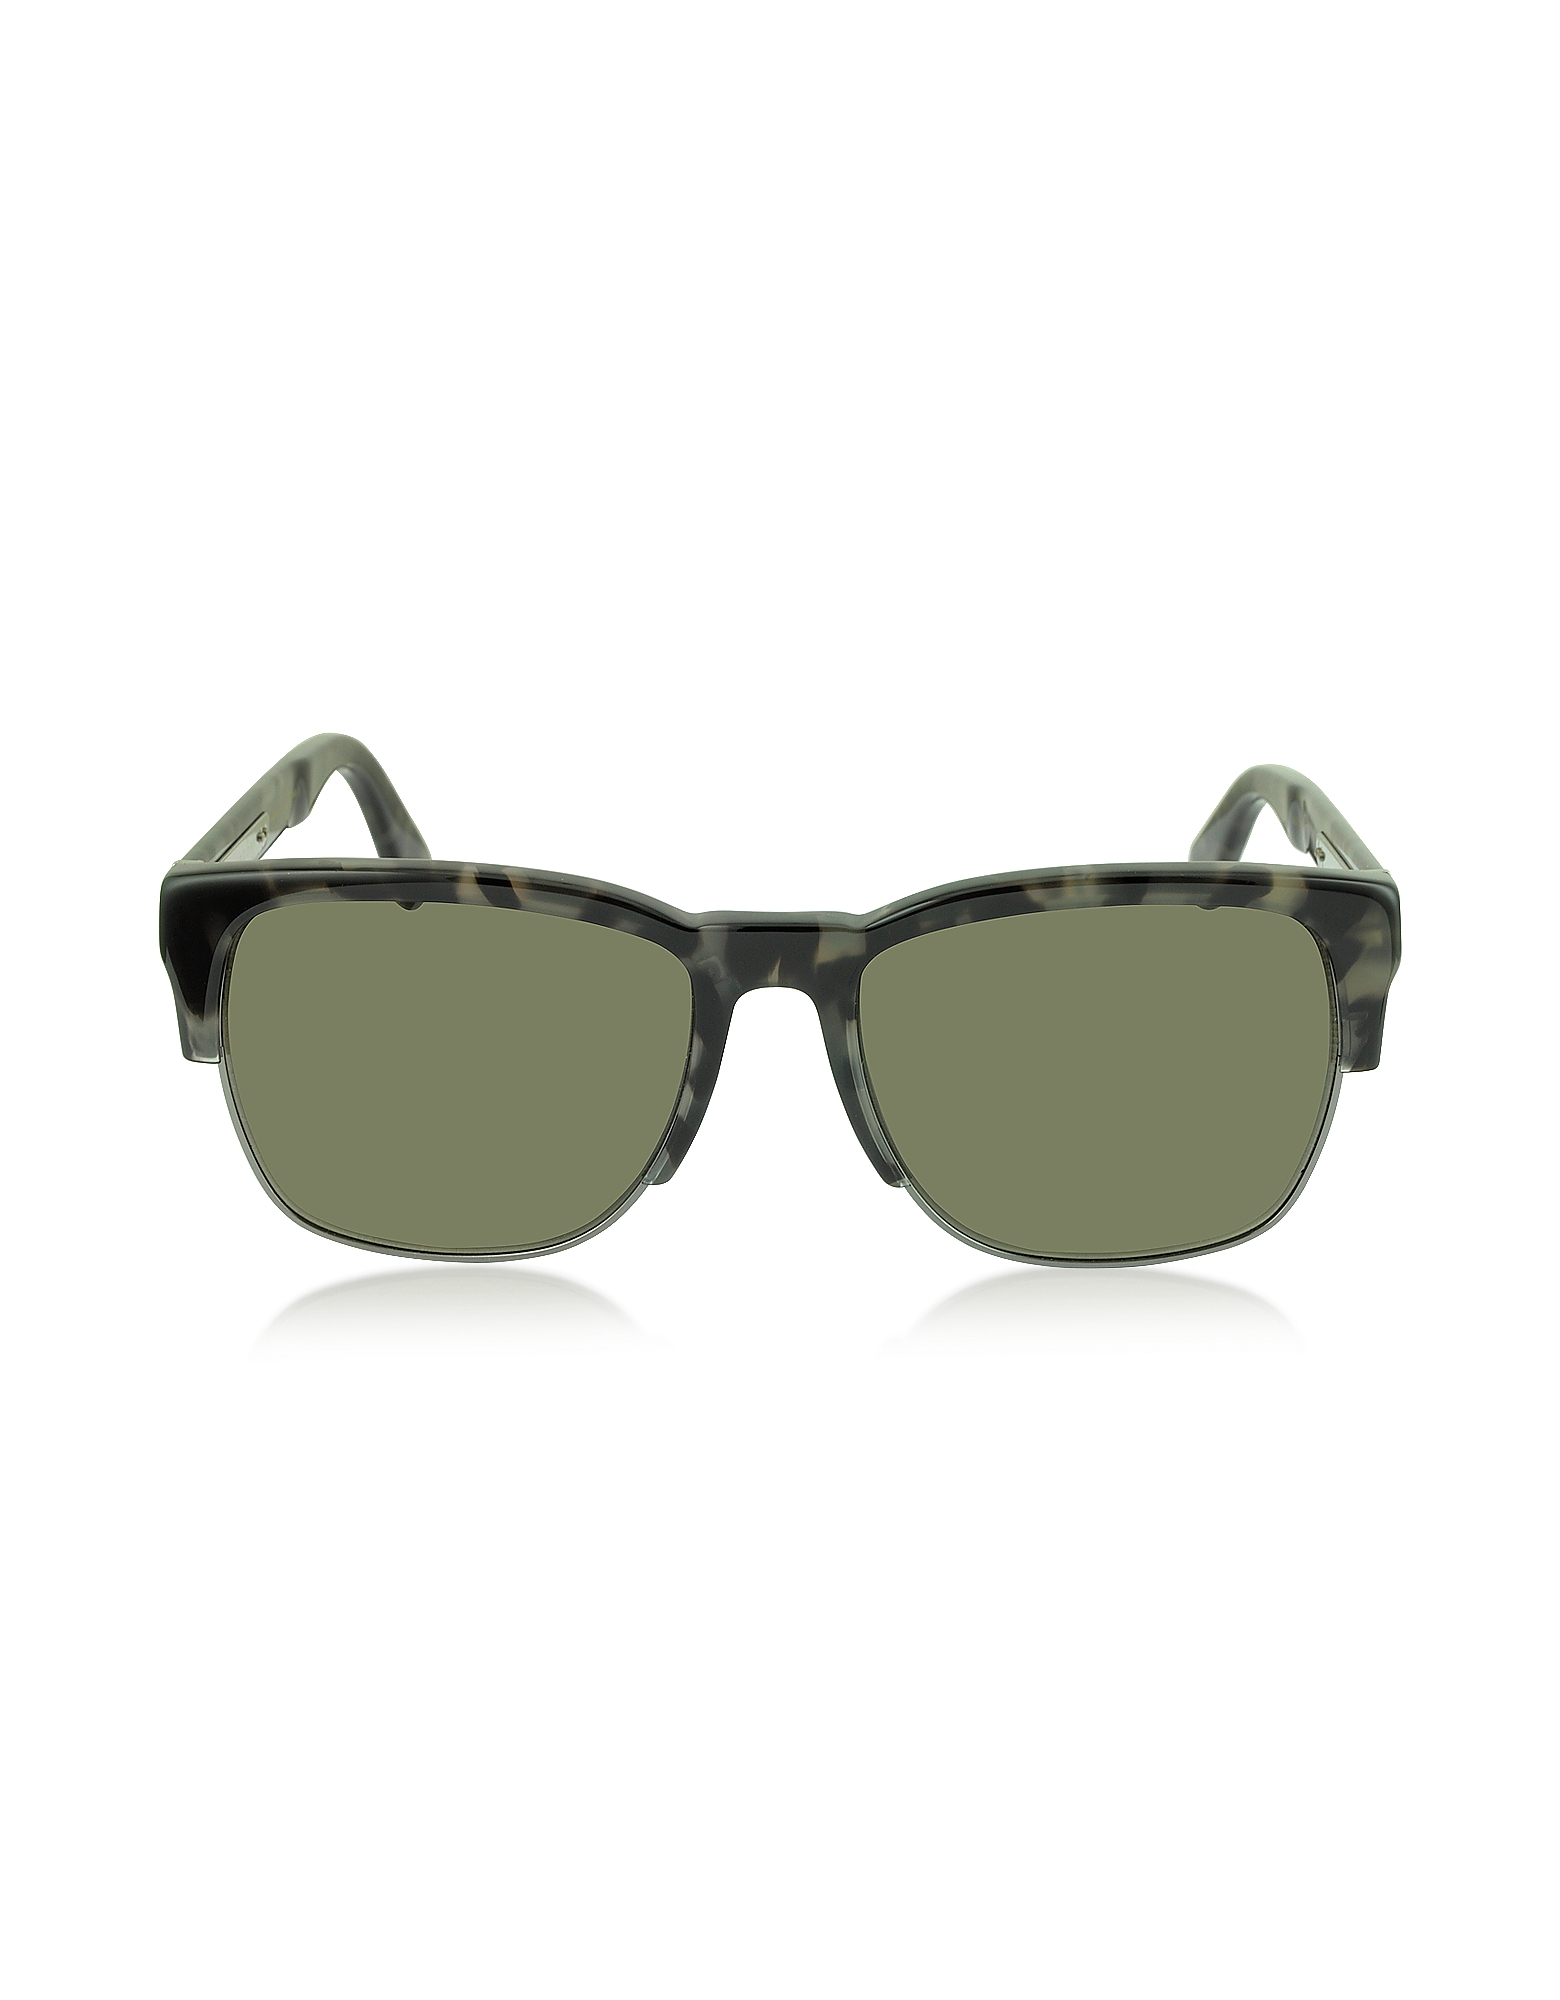 

MJ 526/S Acetate & Metal Men's Sunglasses, Grey/brown